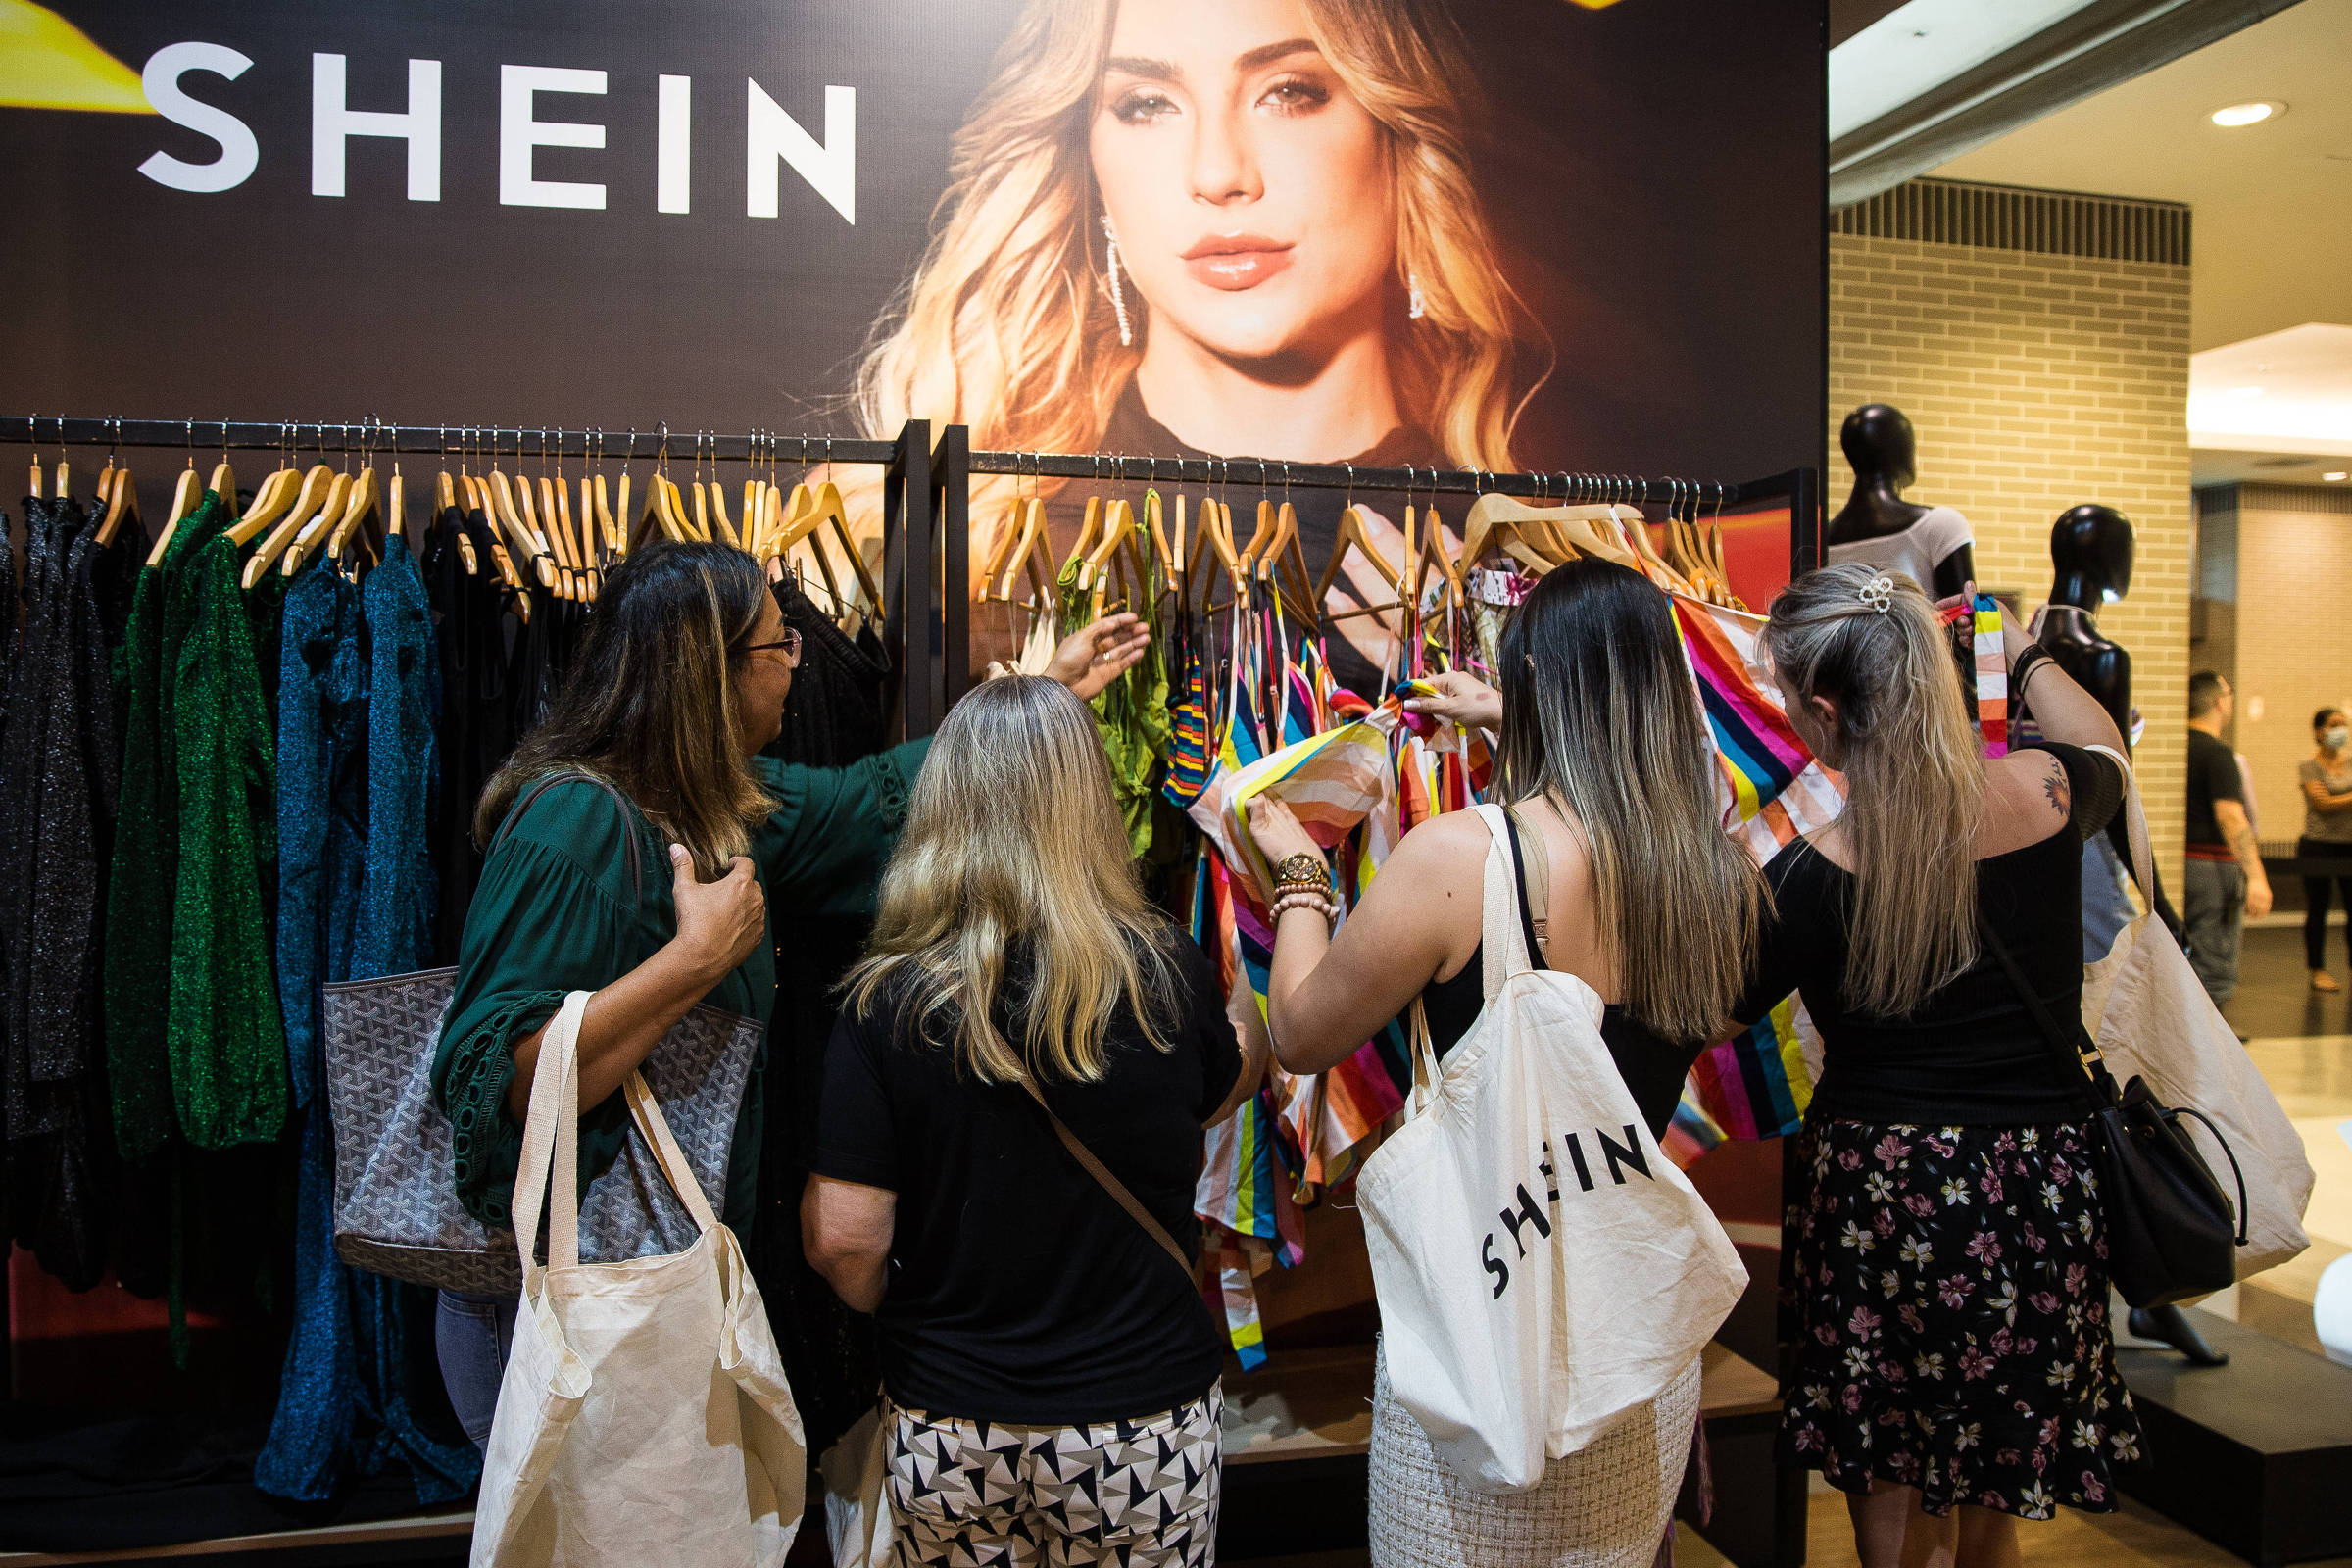 Shein inaugura primeira loja em formato 'pop-up' em São Paulo; veja como  vai funcionar - Estadão